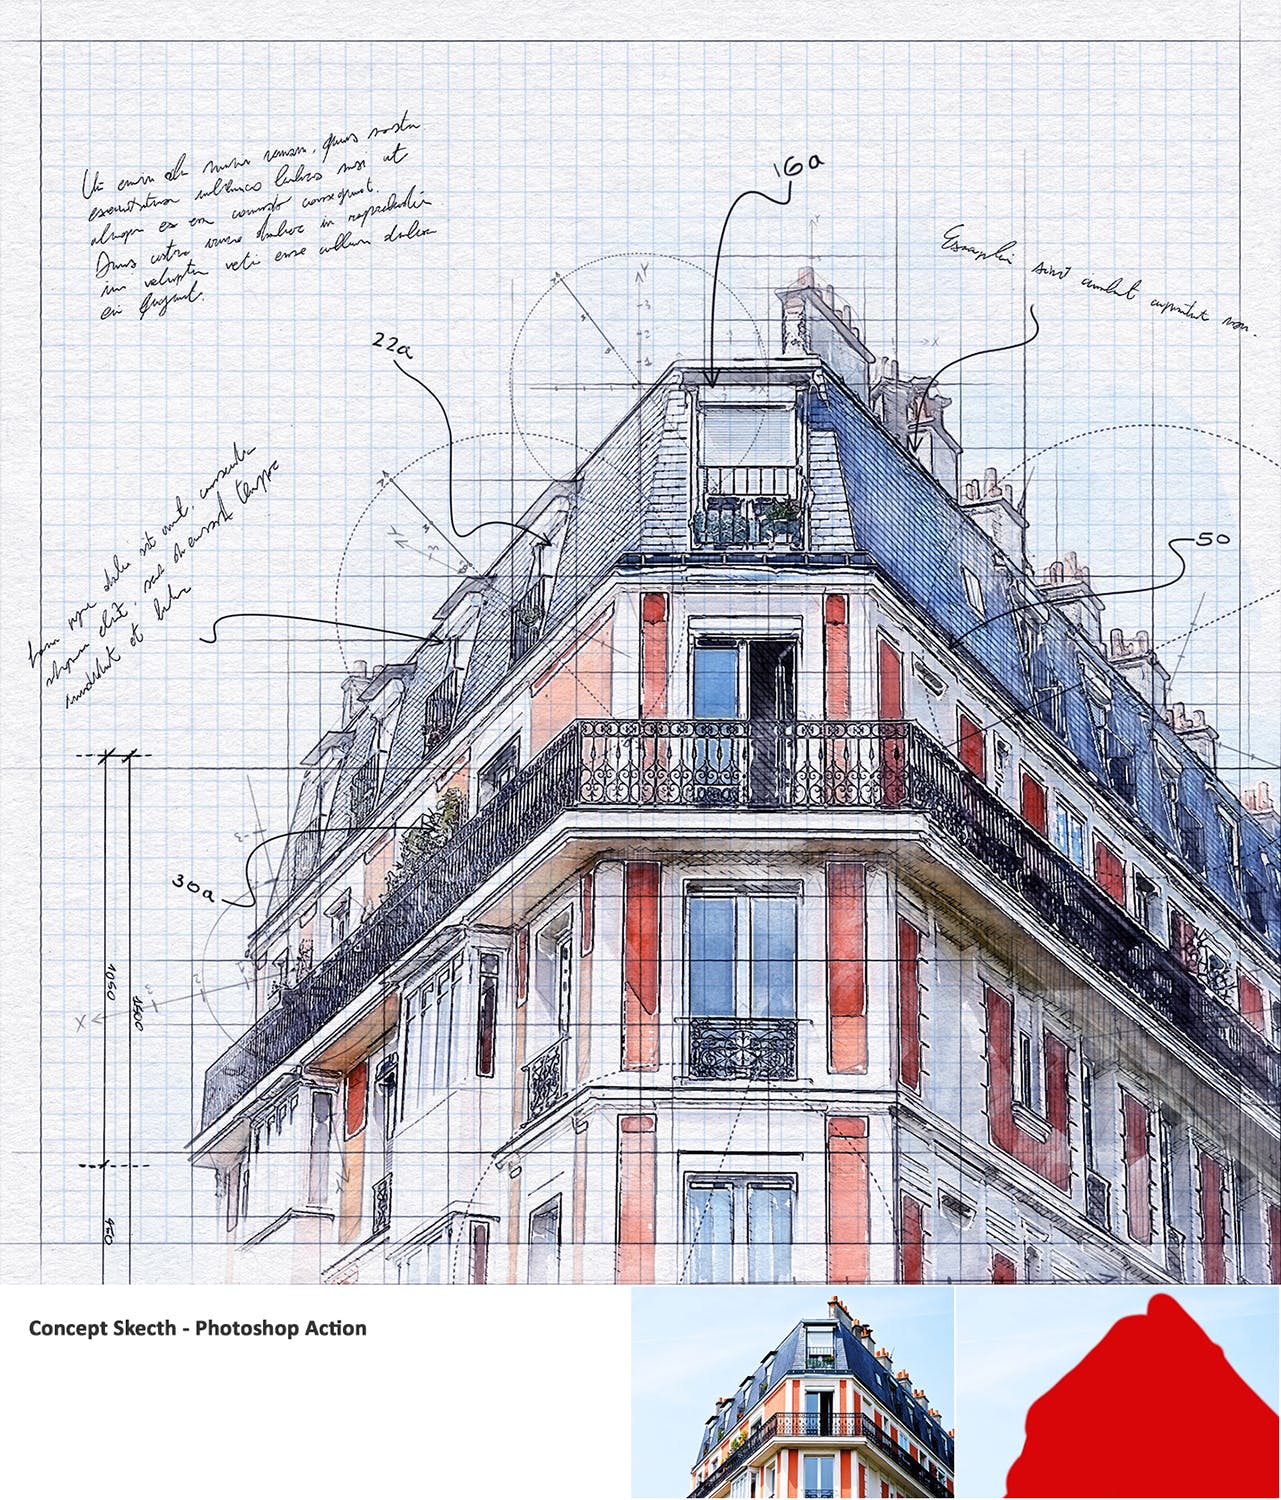 建筑工程设计素描效果图一键生成PS动作 Concept Sketch – Photoshop Action插图(11)